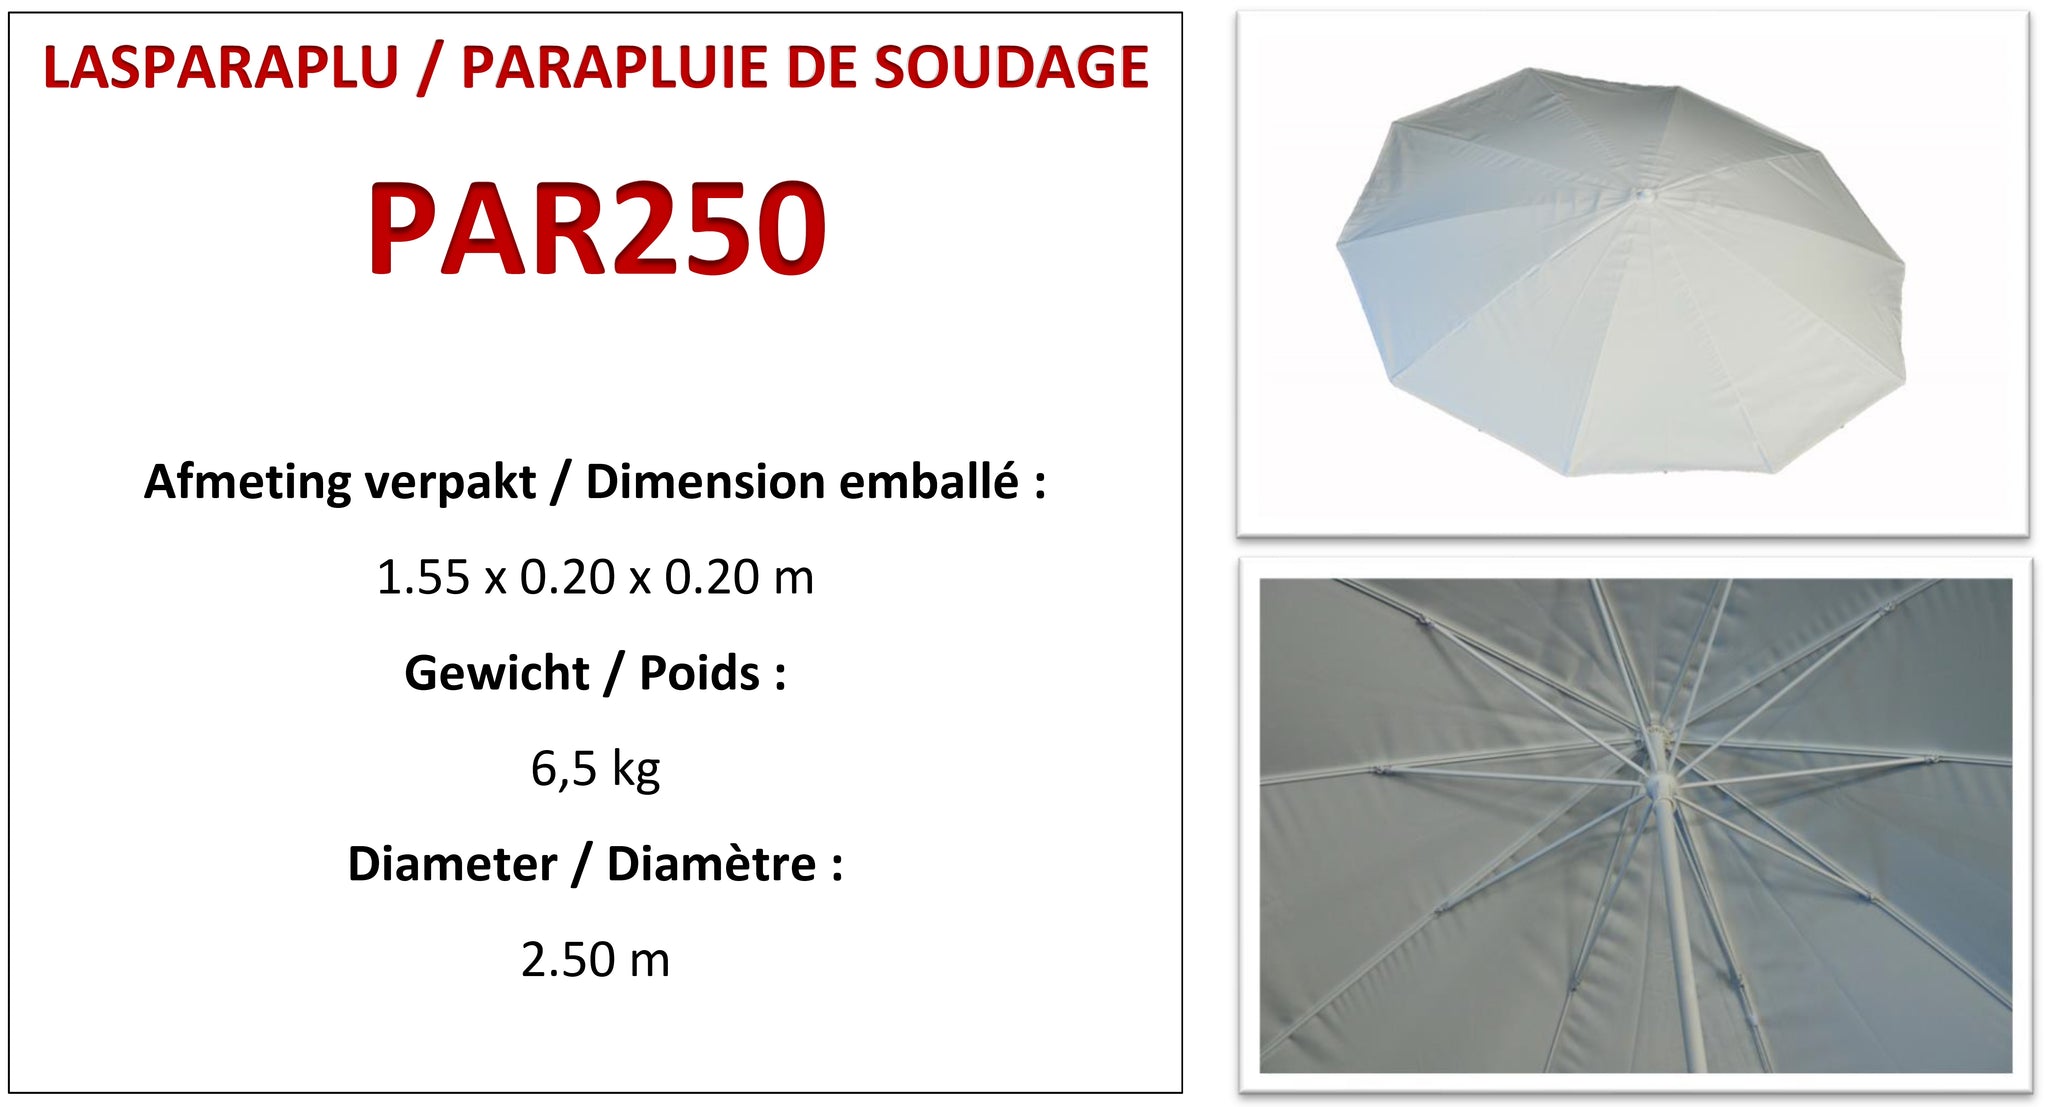 LASPARAPLU PAR250 - PARAPLUIE DE SOUDAGE PAR250